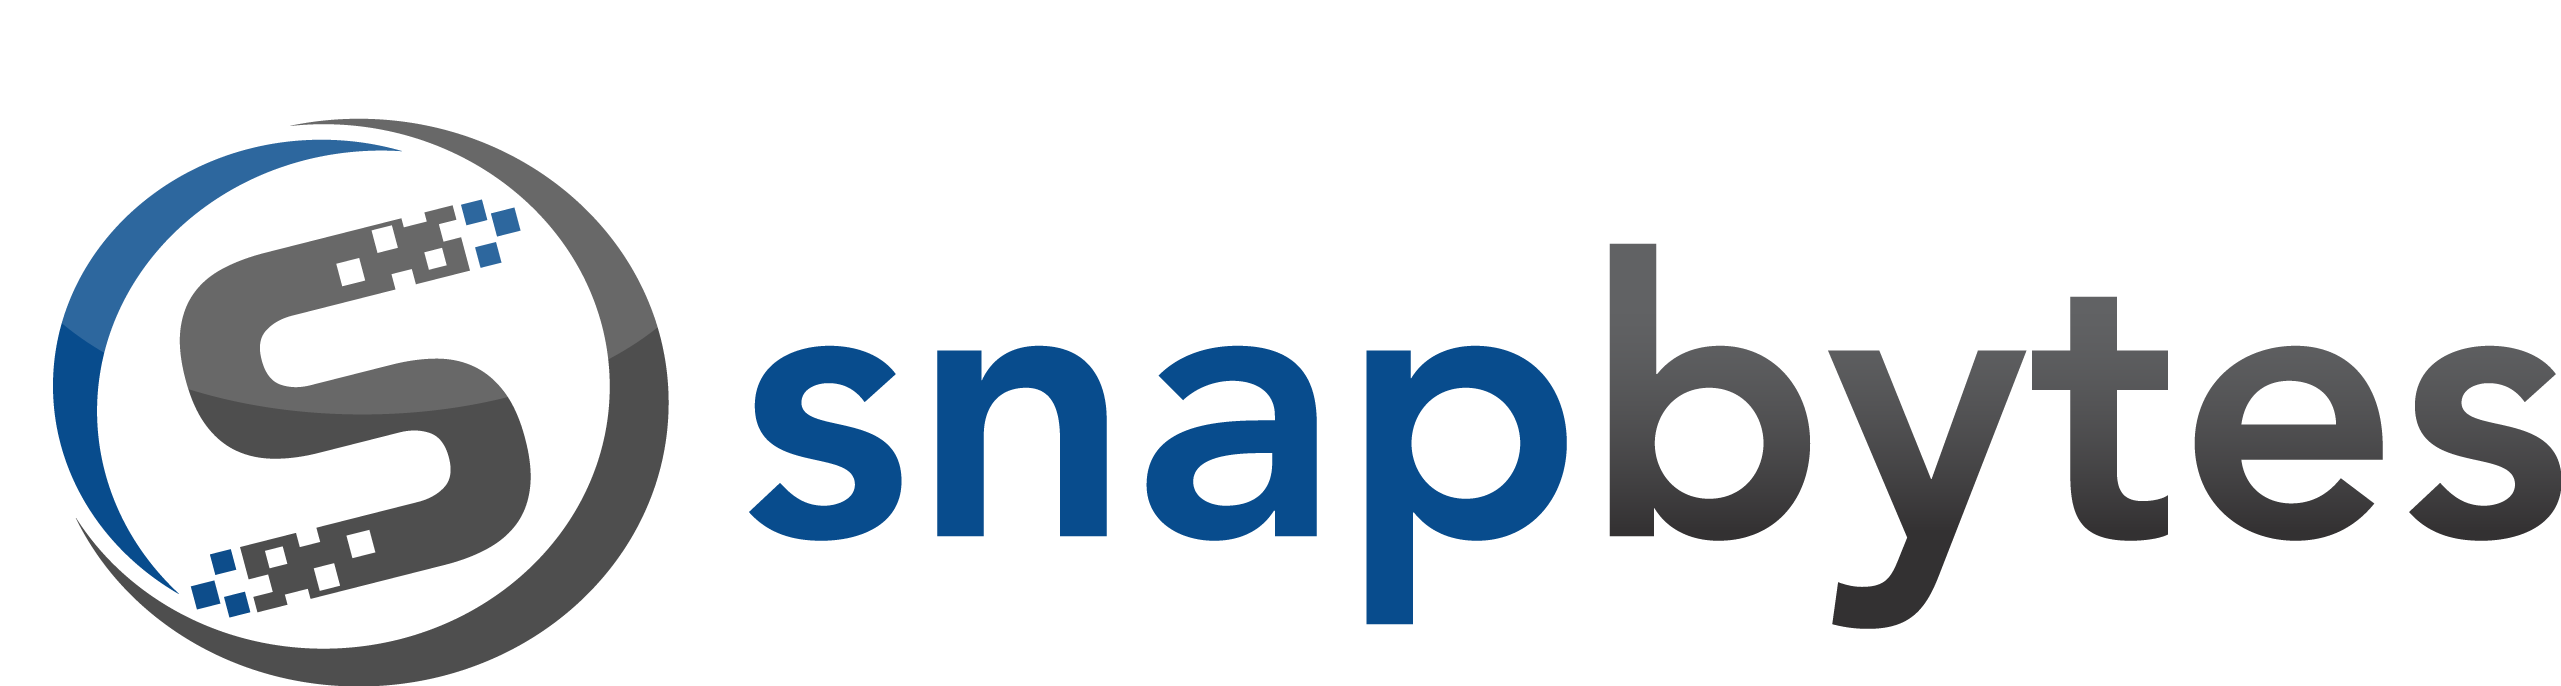 Logo Snapbytes